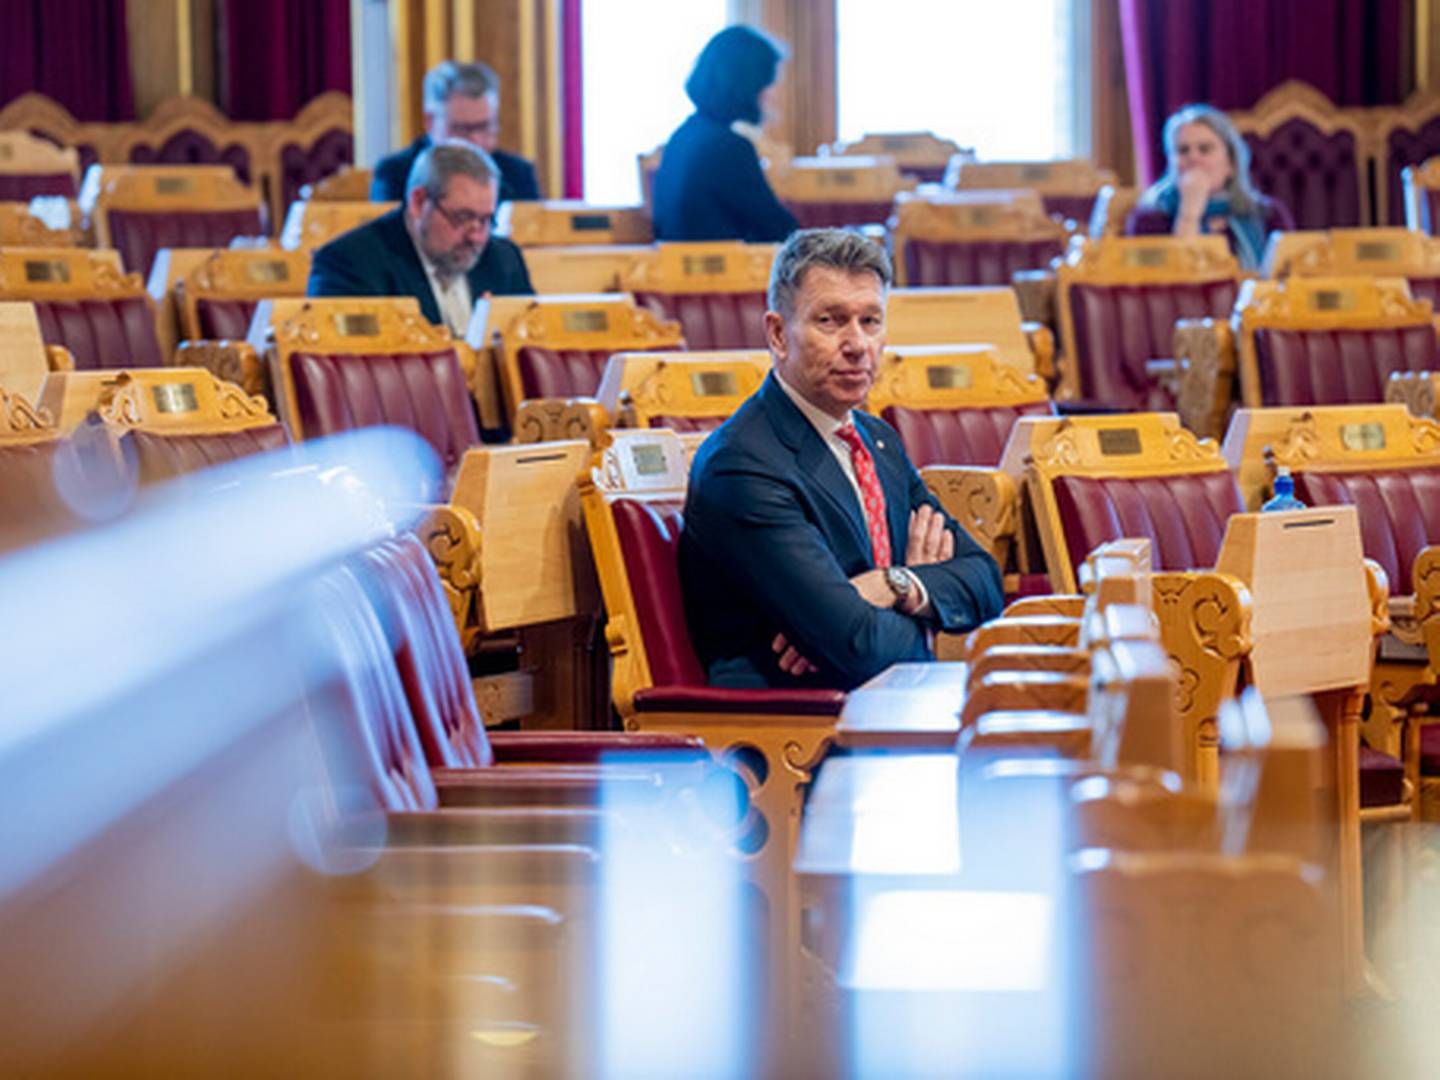 NEI: Olje- og energiminister Terje Aasland at regjeringen ikke kommer til å innføre grunnrenteskatt på de første havvind-prosjektene som nå lyses ut. | Foto: Fredrik Varfjell / NTB